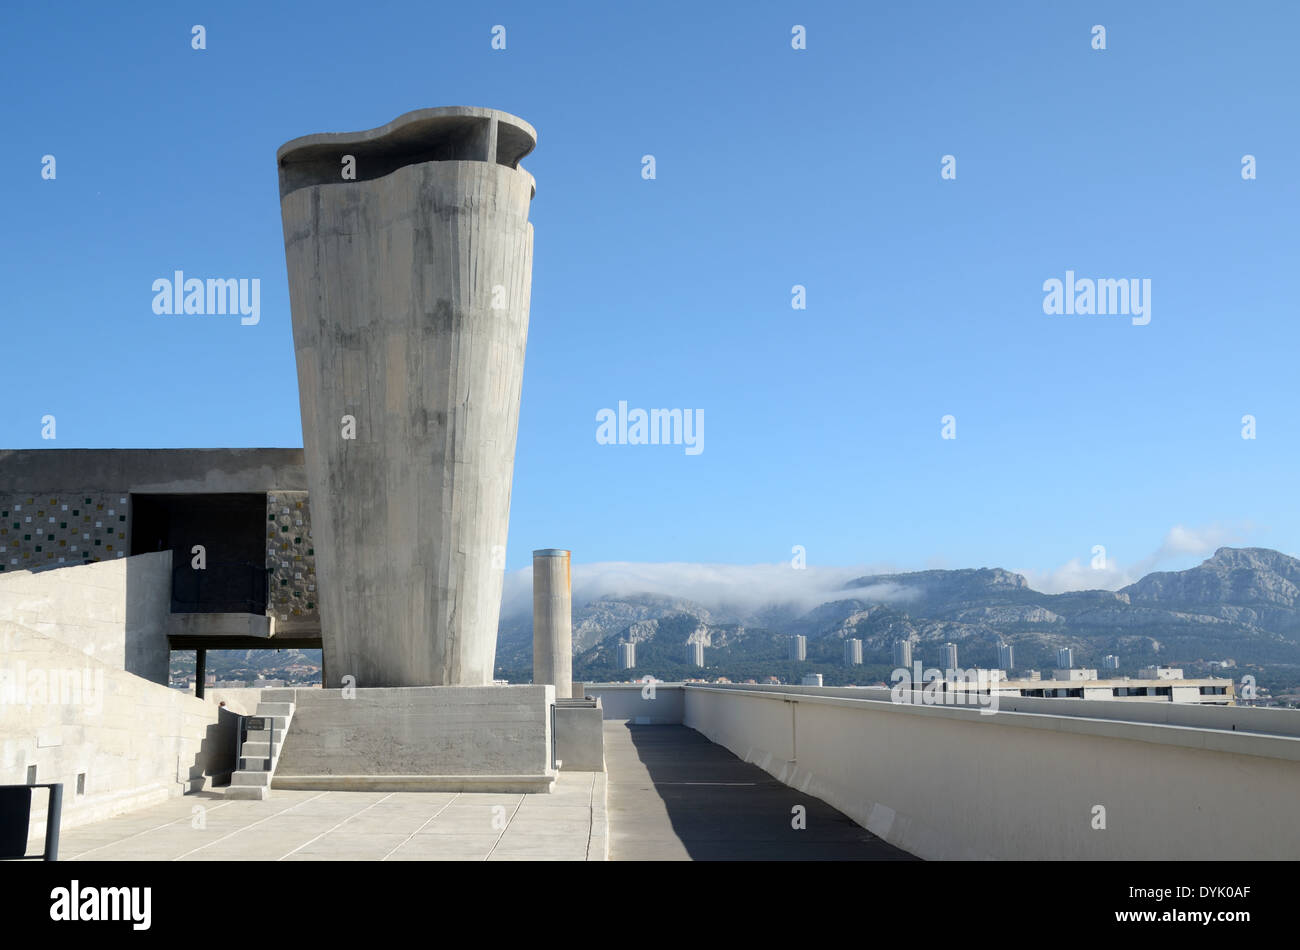 Terrasse de toit en béton et de Ventilation de l'Unité d'habitation ou Cité radieuse de Le Corbusier Marseille ou Marseille France Banque D'Images